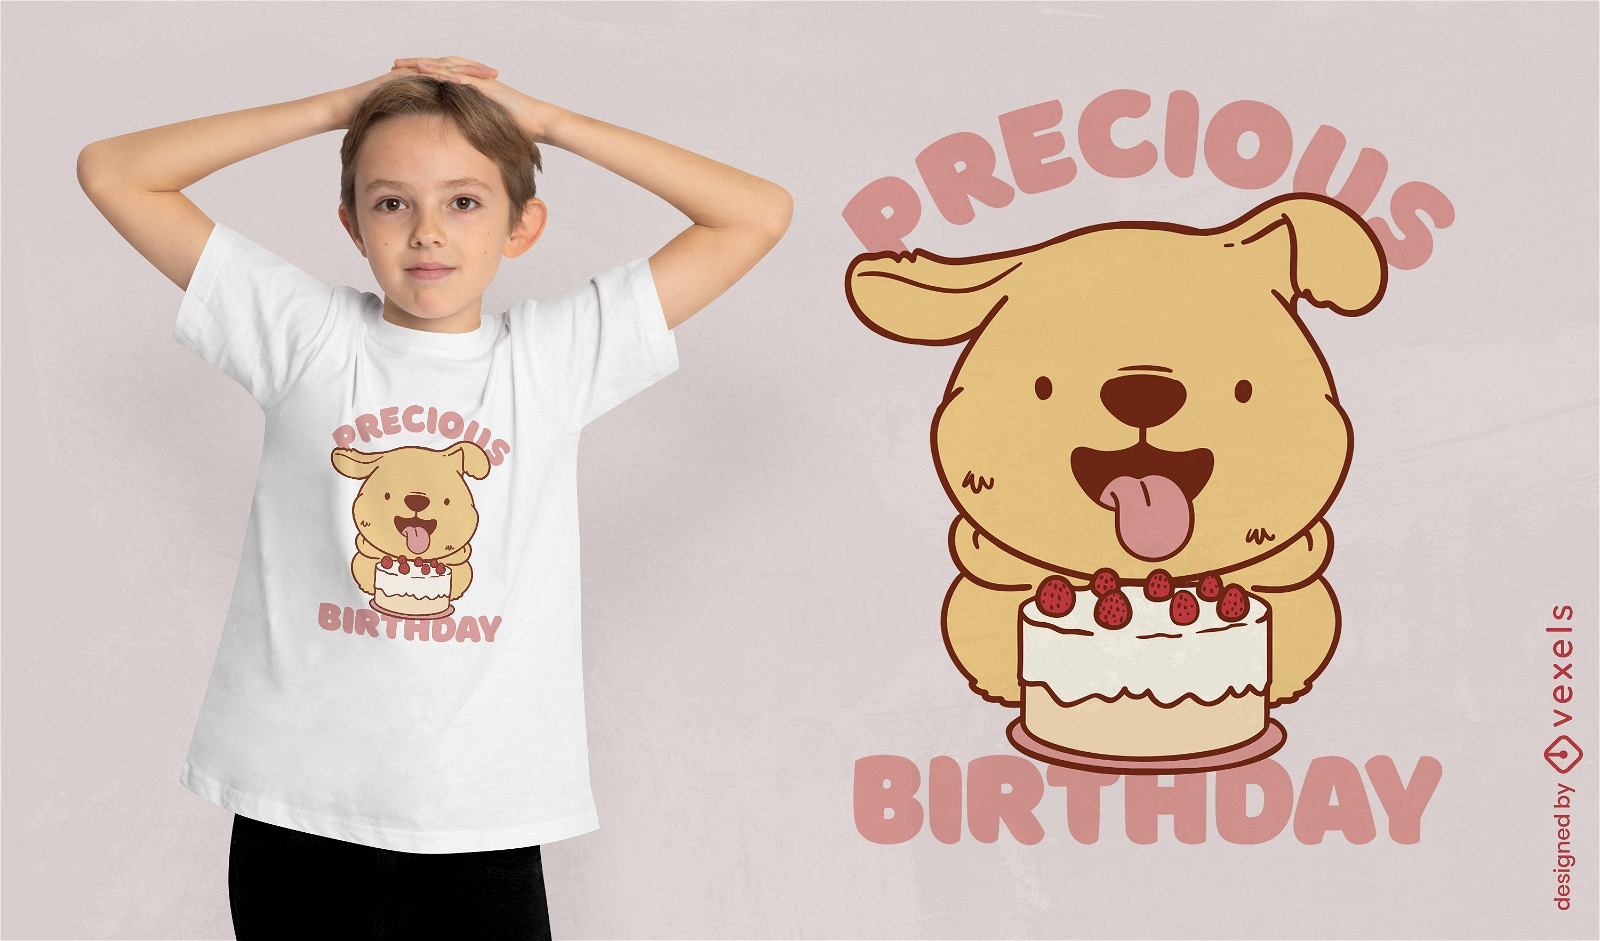 Birthday dog t-shirt design